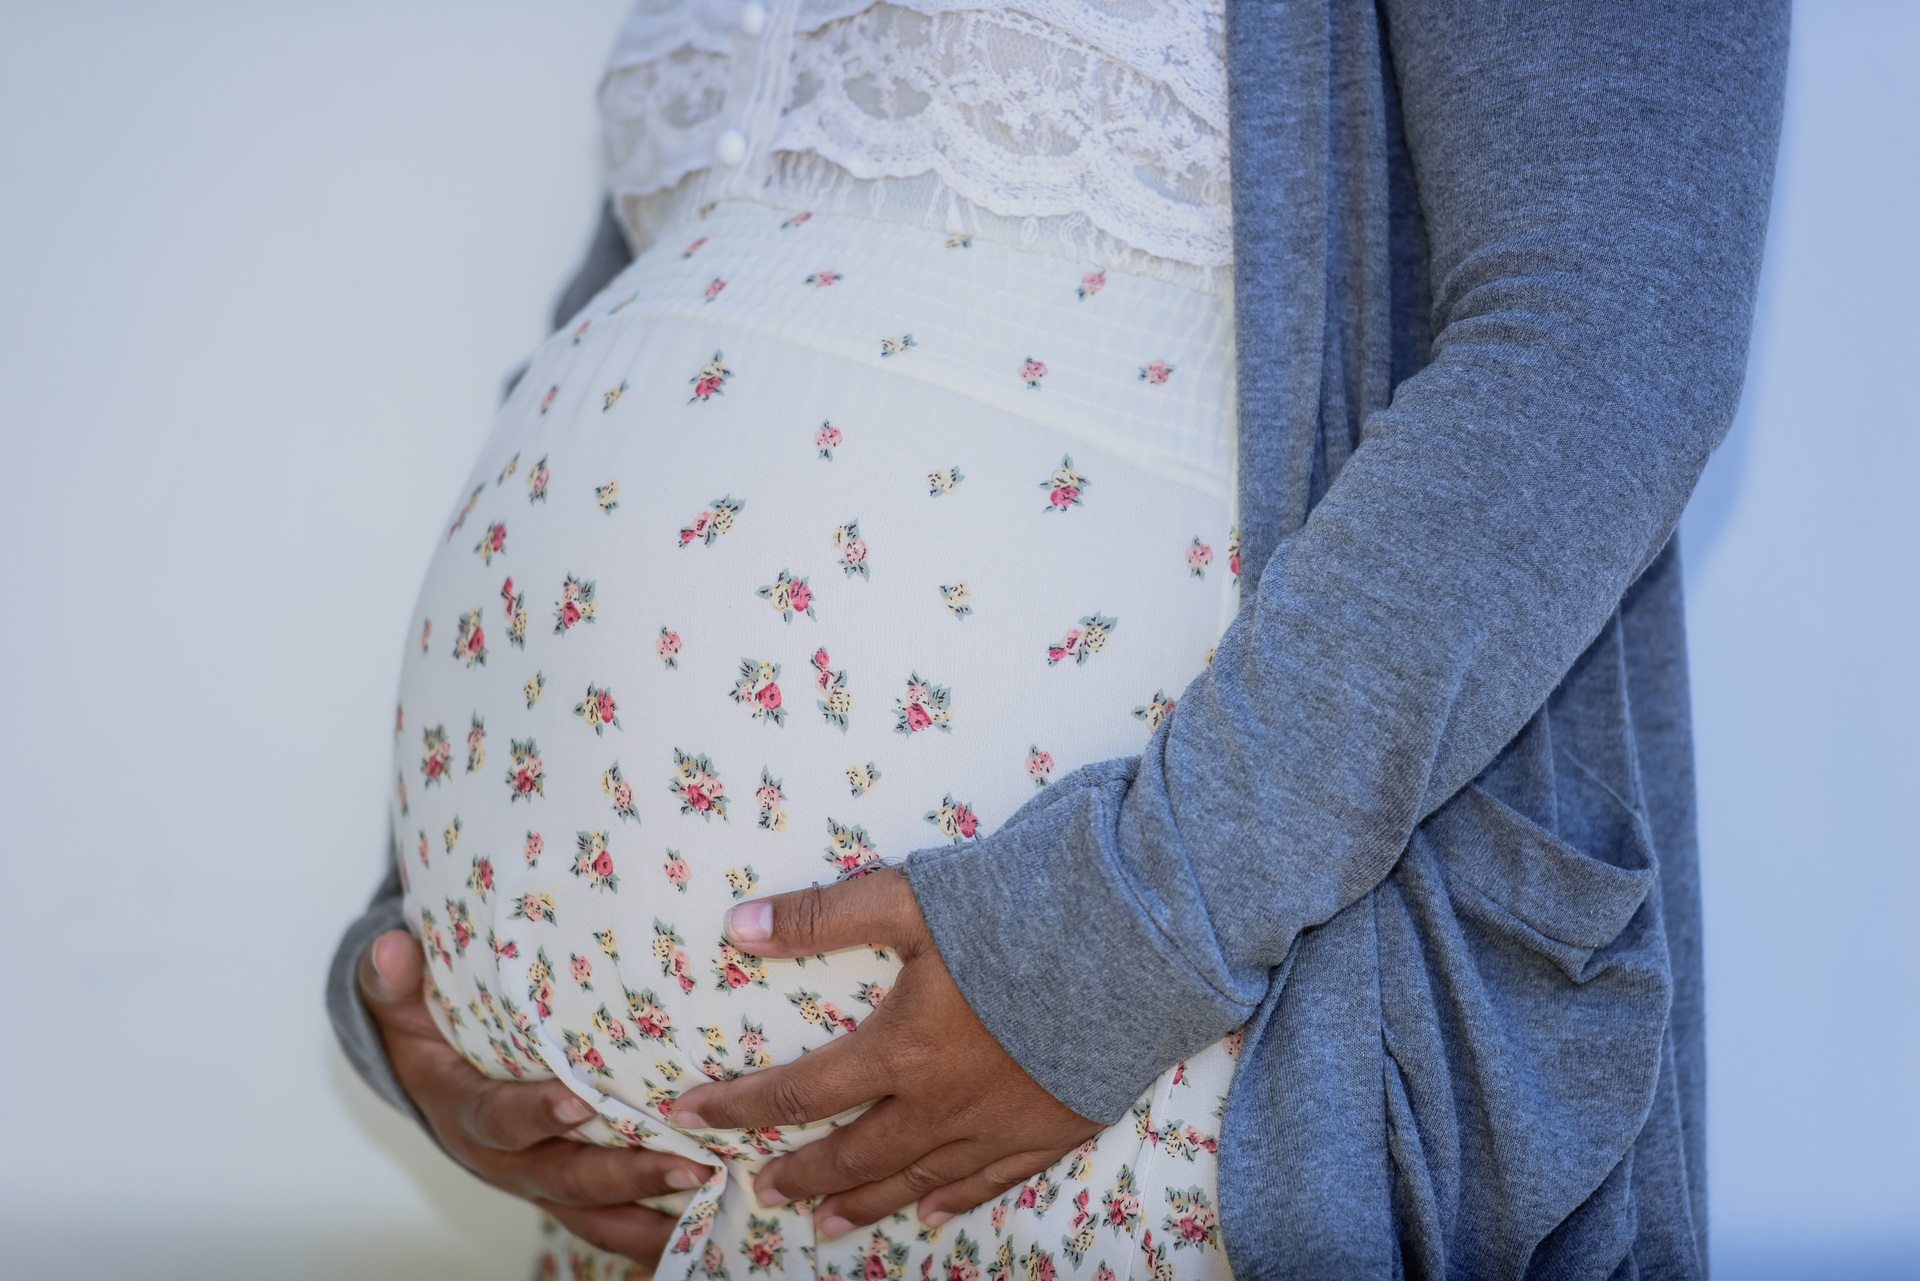 Na tym obrazku widzimy kobietę w ciąży, której wyniki badań wykazały wysokie poziomy leukocytów. To wskazuje na potencjalne wystąpienie stanu zapalnego lub infekcji w organizmie matki. Ważne jest monitorowanie i odpowiednie leczenie, aby zapewnić zdrowie zarówno matce, jak i nienarodzonemu dziecku